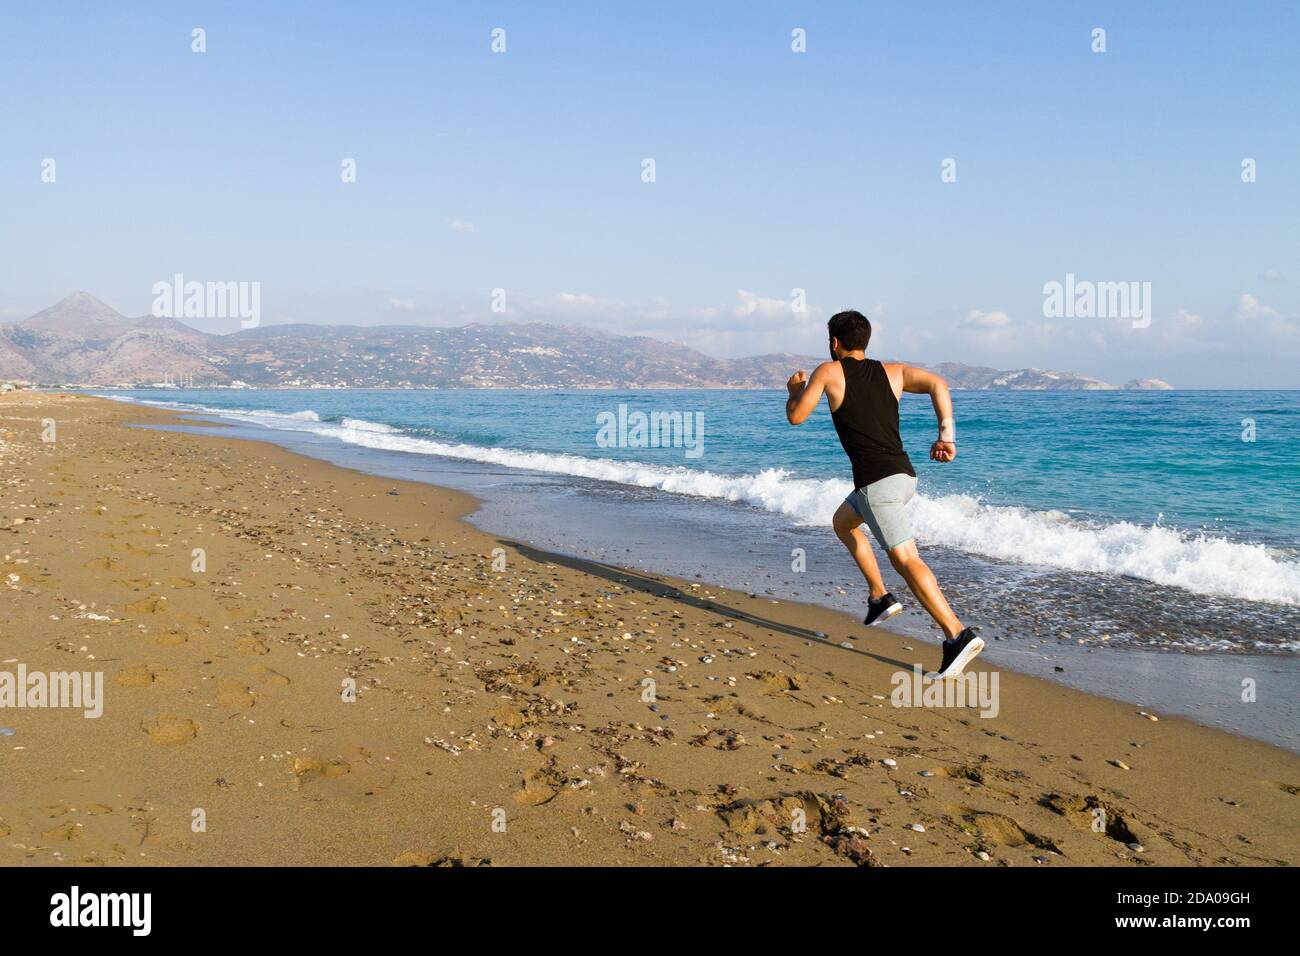 Läufer sprinten zum Erfolg Laufen auf nassem Sand am Strand. Männlicher Athlet Sprintertraining für Wettkampfschnellsprintung Lauf auf nassem Sand bei t Stockfoto